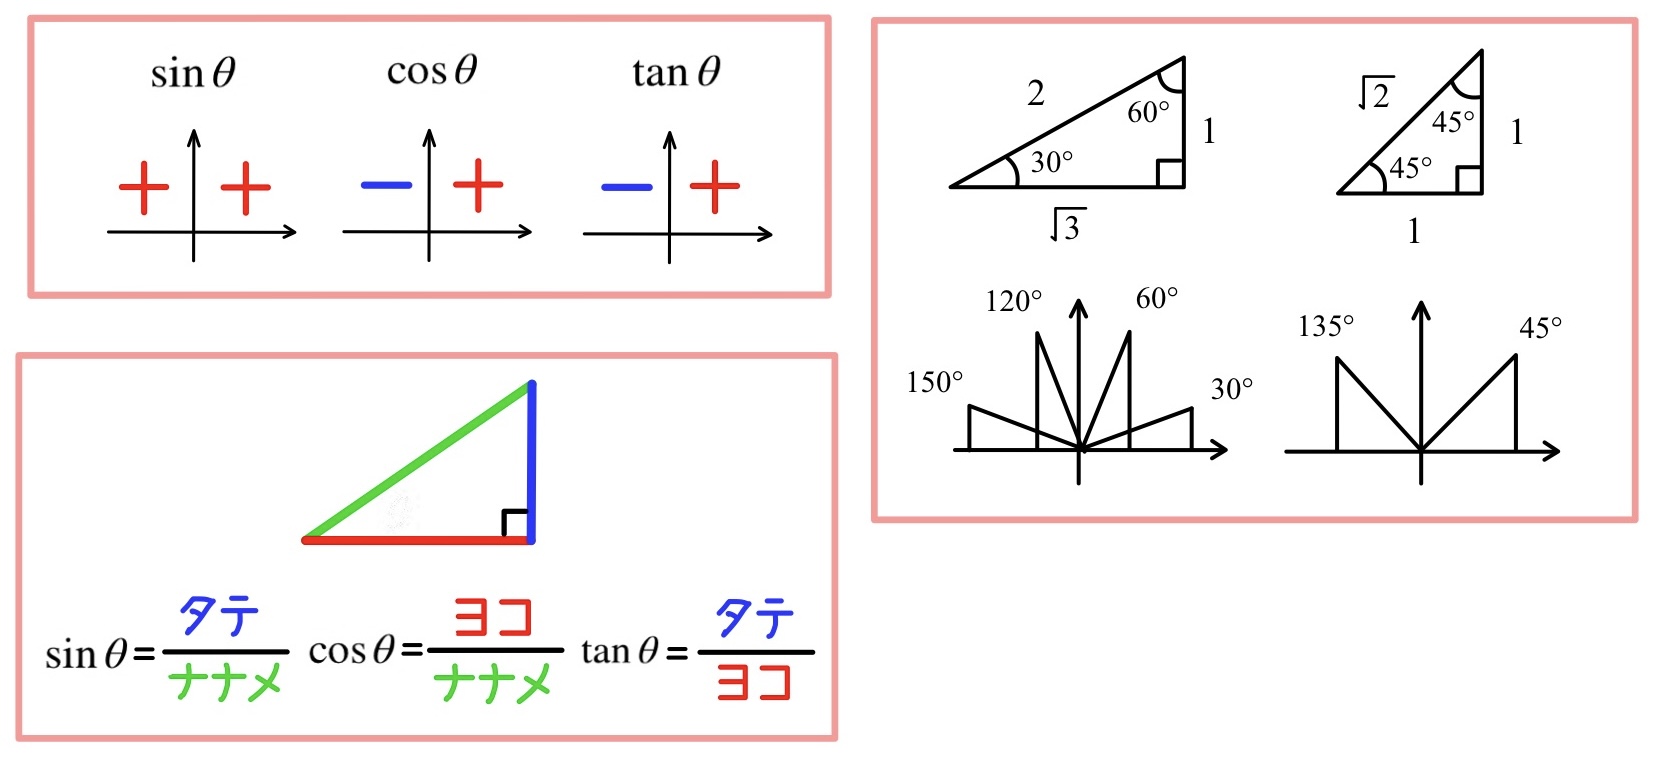 tanθと直線の傾き 公式